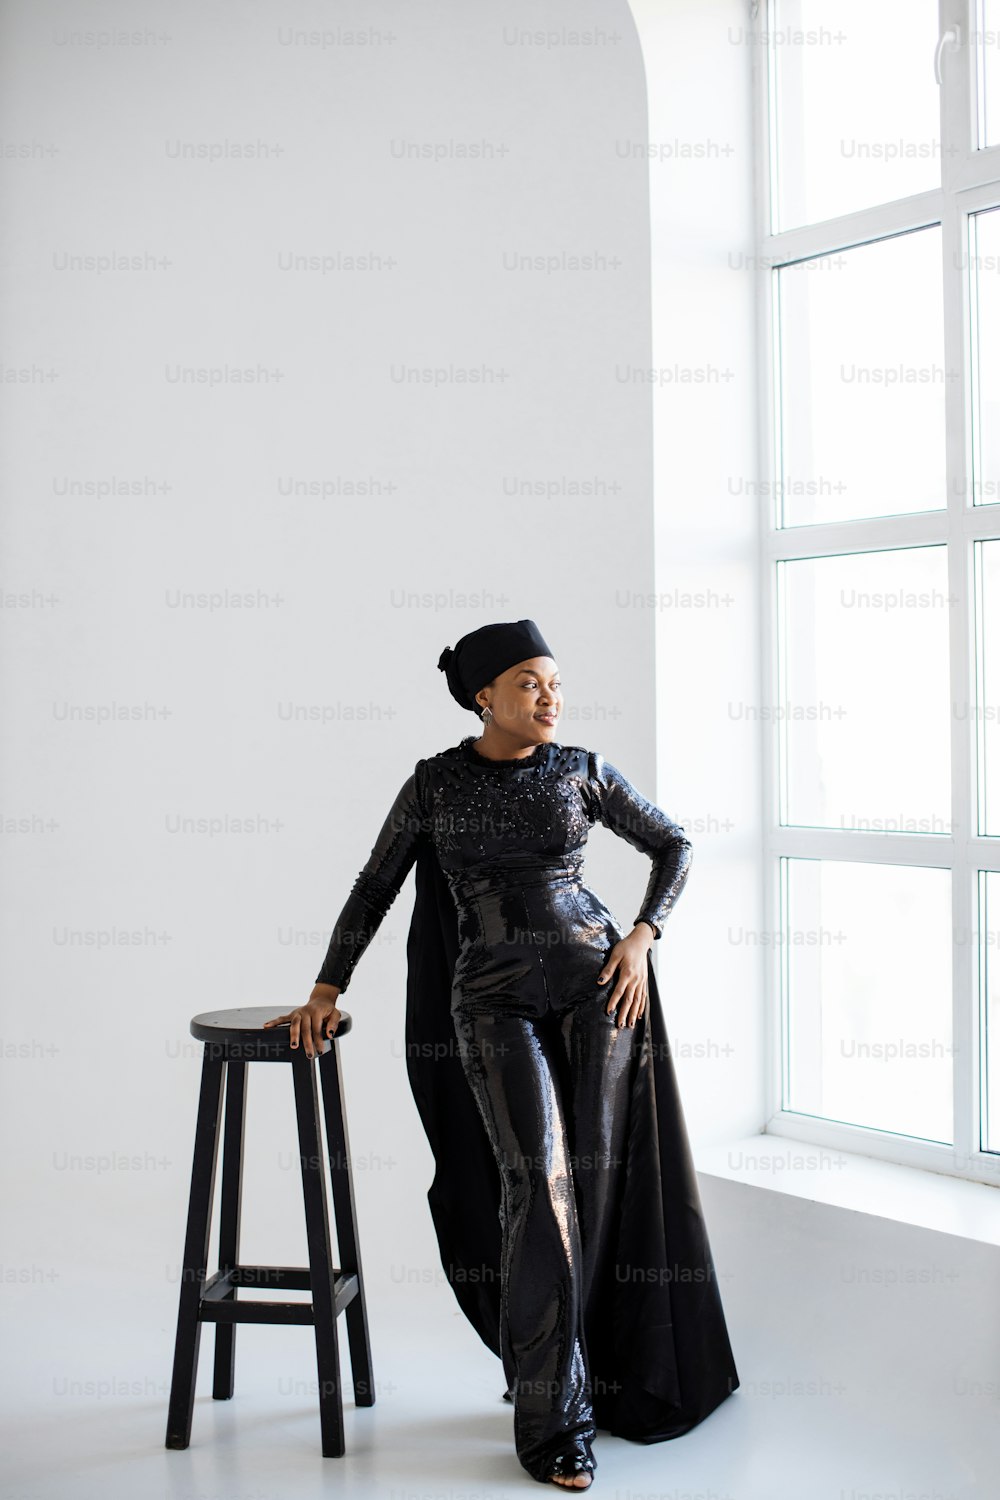 Atemberaubende afroamerikanische Frau mit stilvollem schwarzen Hut und Kleidung, die sich auf einen Hochstuhl stützt und zum Fenster schaut. Weißer Studiohintergrund.